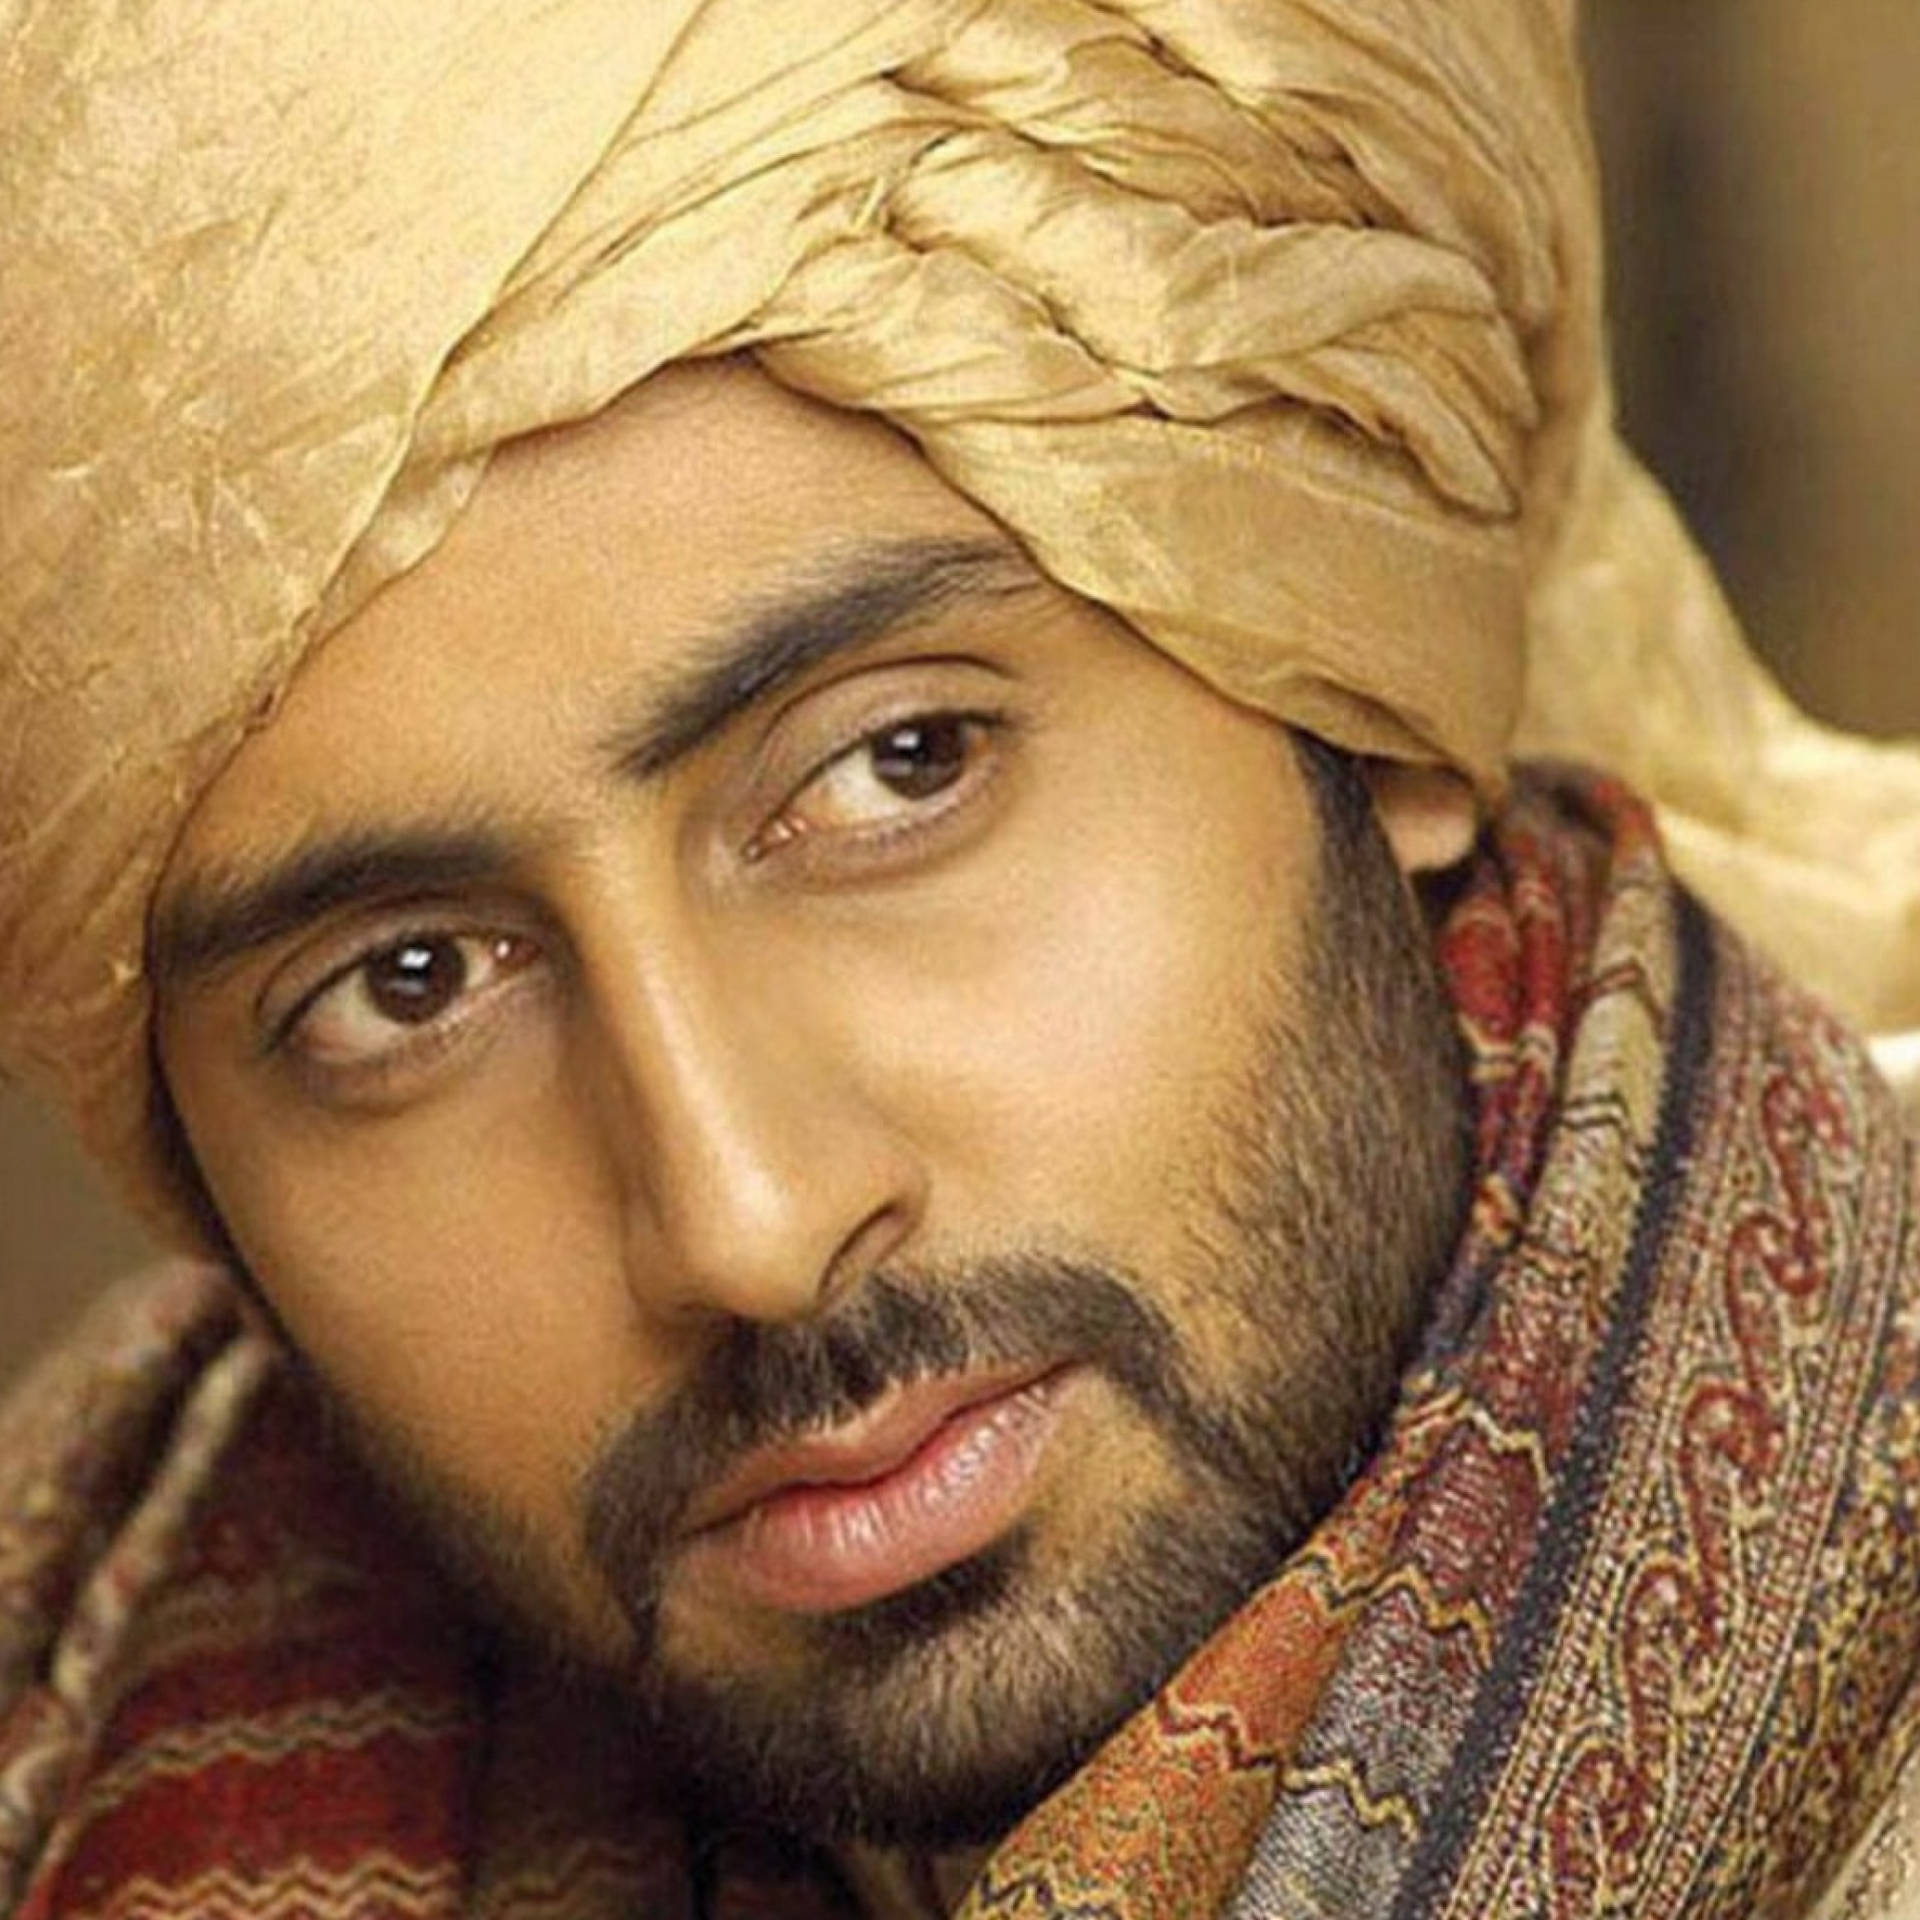 Abhishek Bachchan Wearing Indian Clothing Background